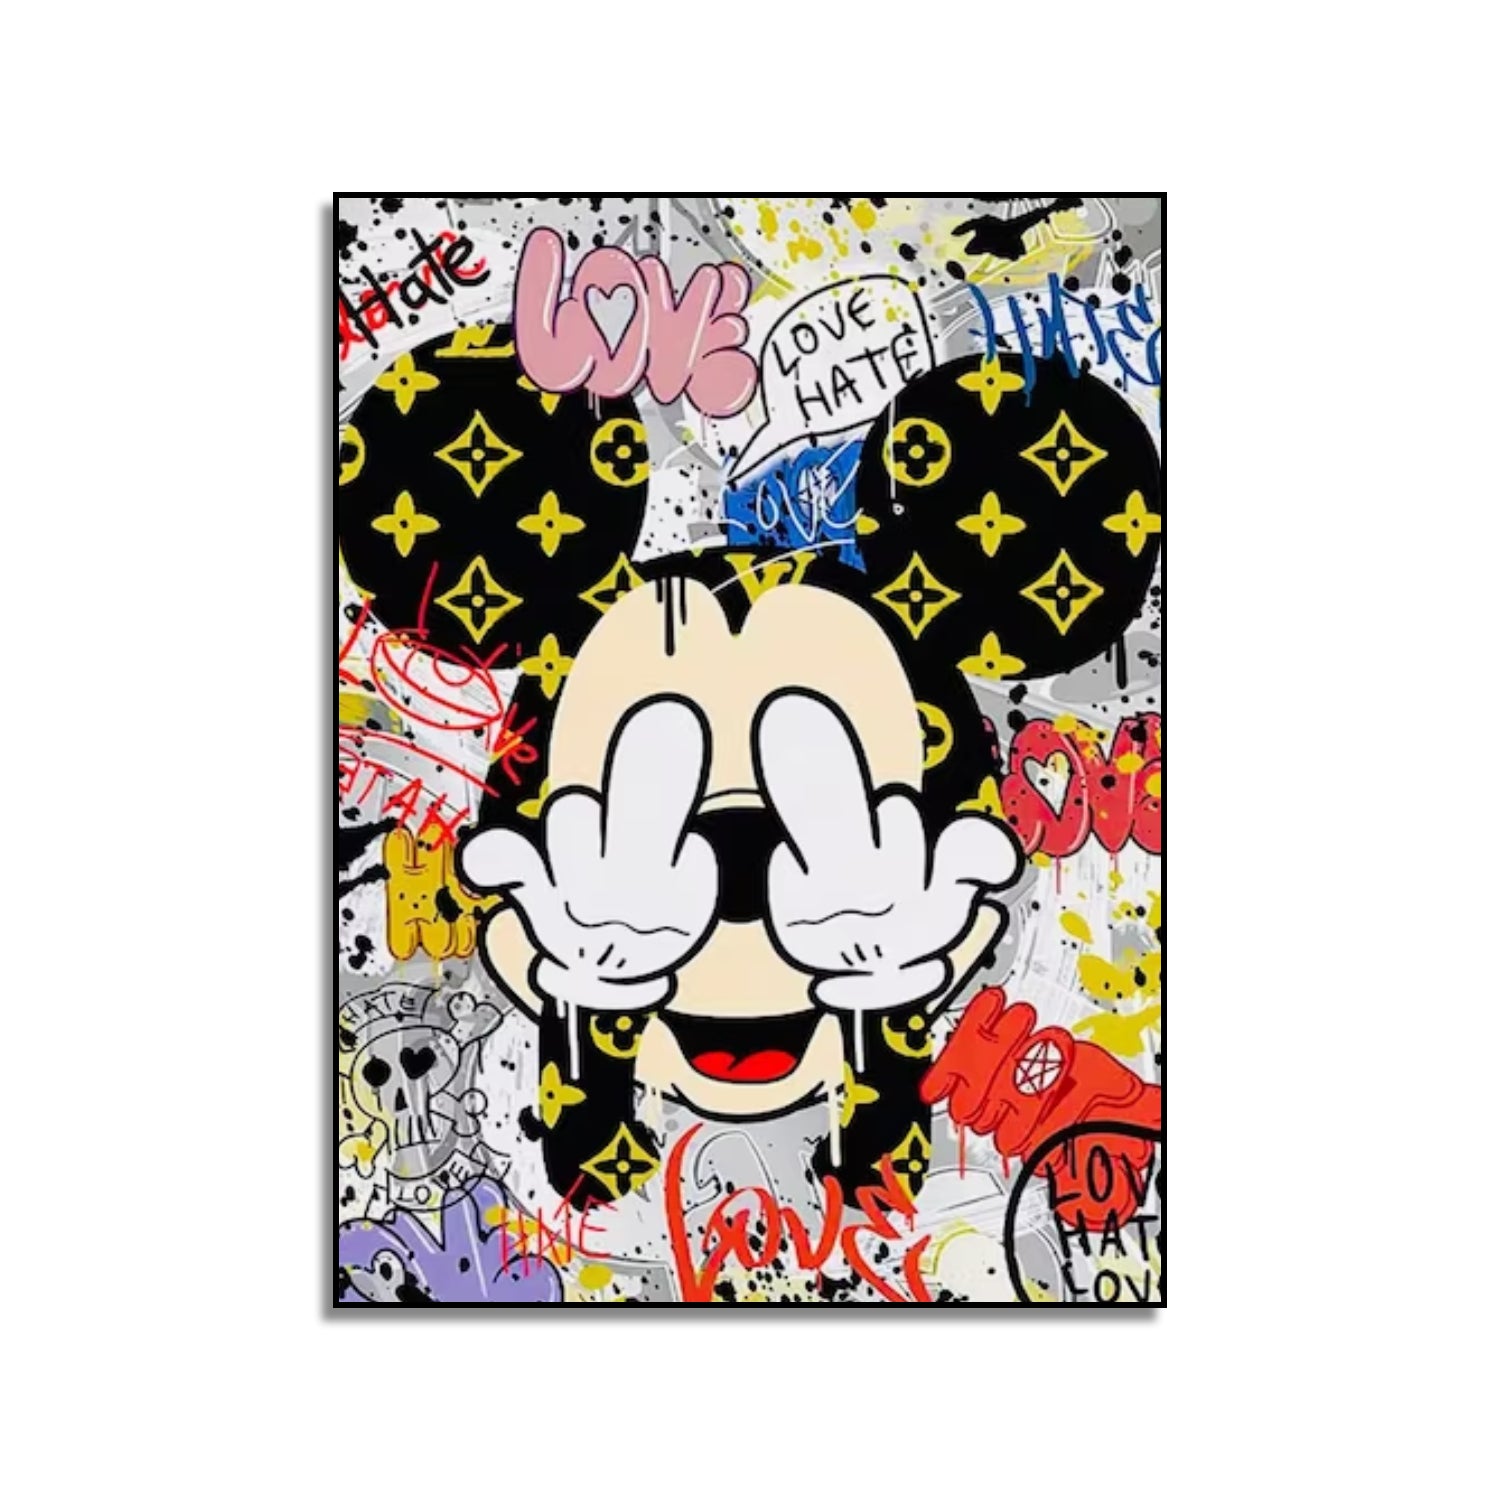 Acrylic Playful Mickey Mouse Graffiti Pop Art Painting